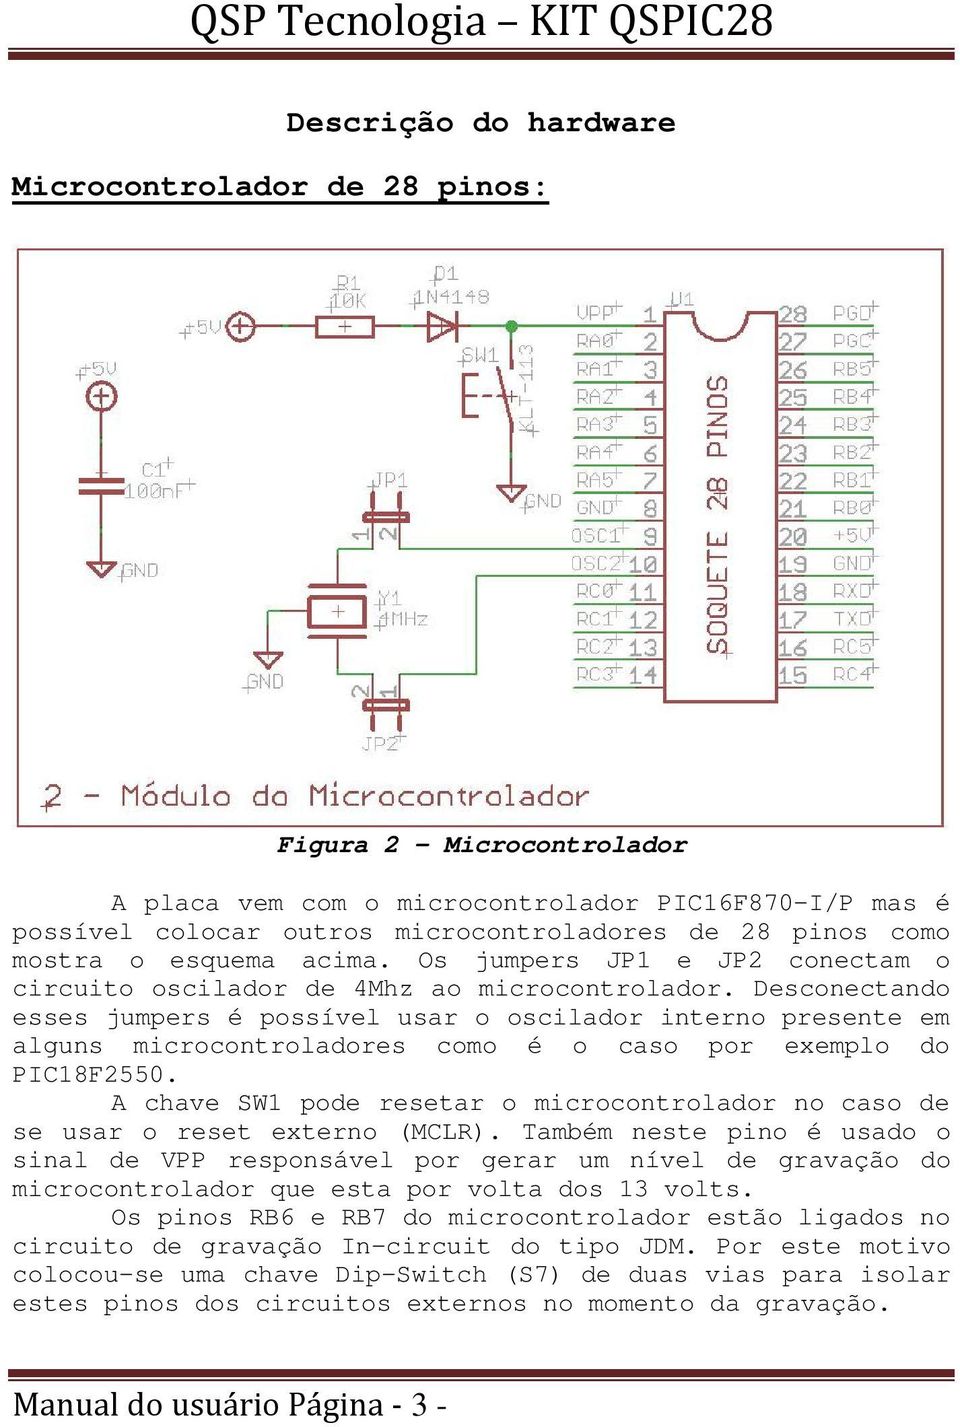 Desconectando esses jumpers é possível usar o oscilador interno presente em alguns microcontroladores como é o caso por exemplo do PIC18F2550.